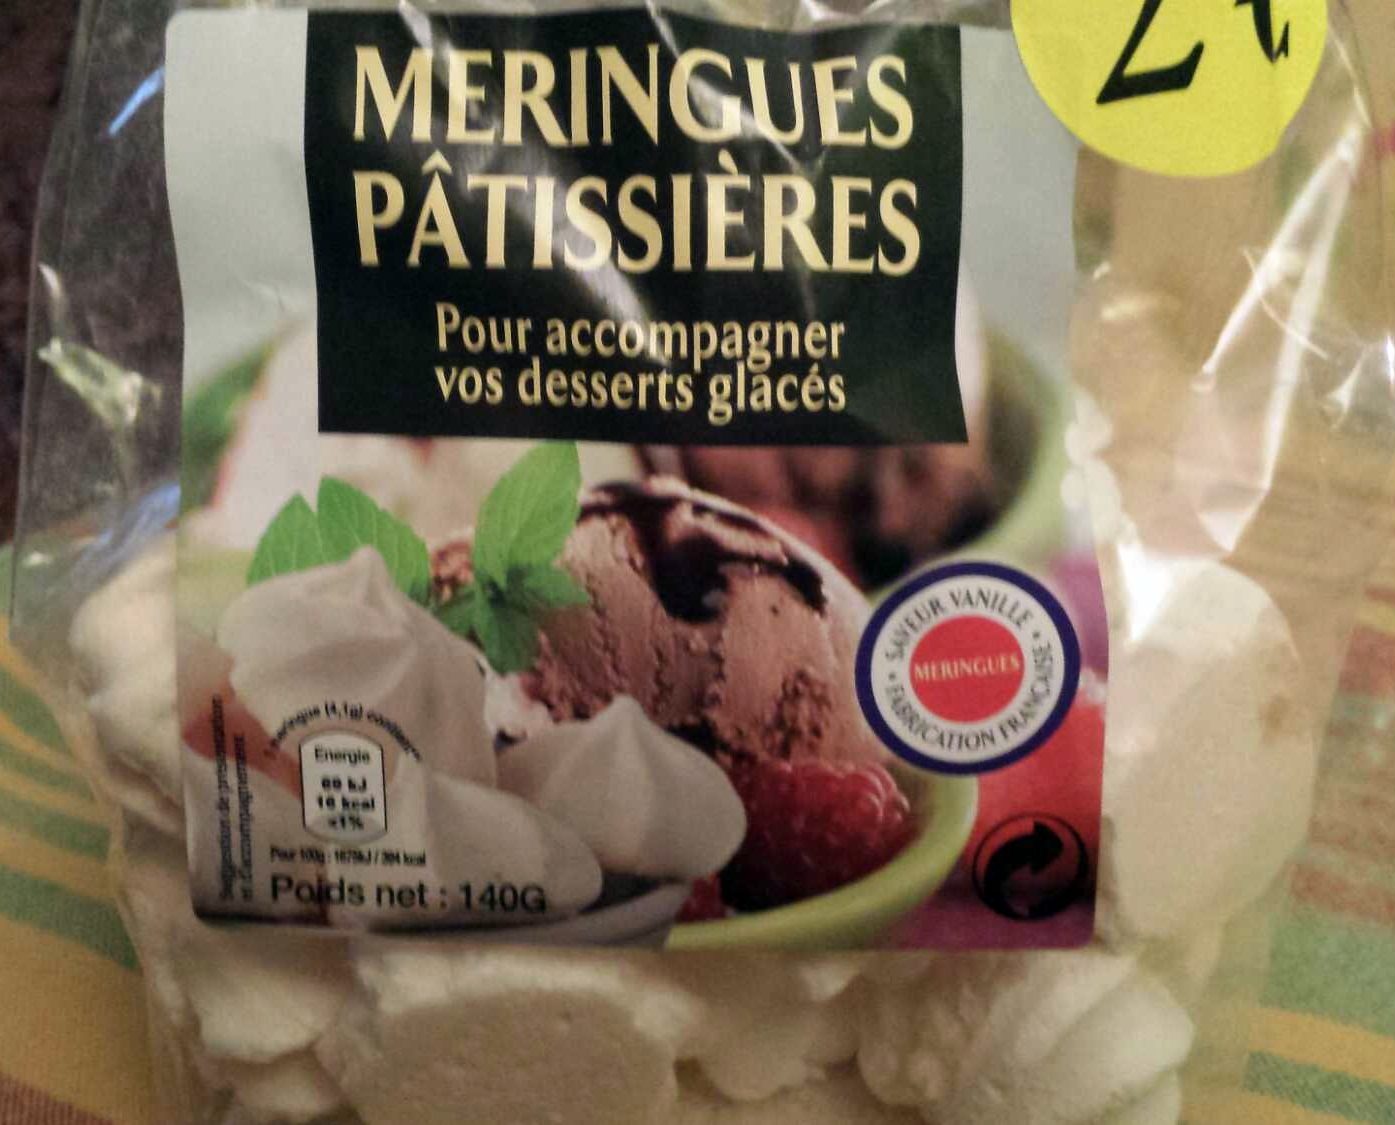 Meringues Pâtissières saveur Vanille - Producto - fr